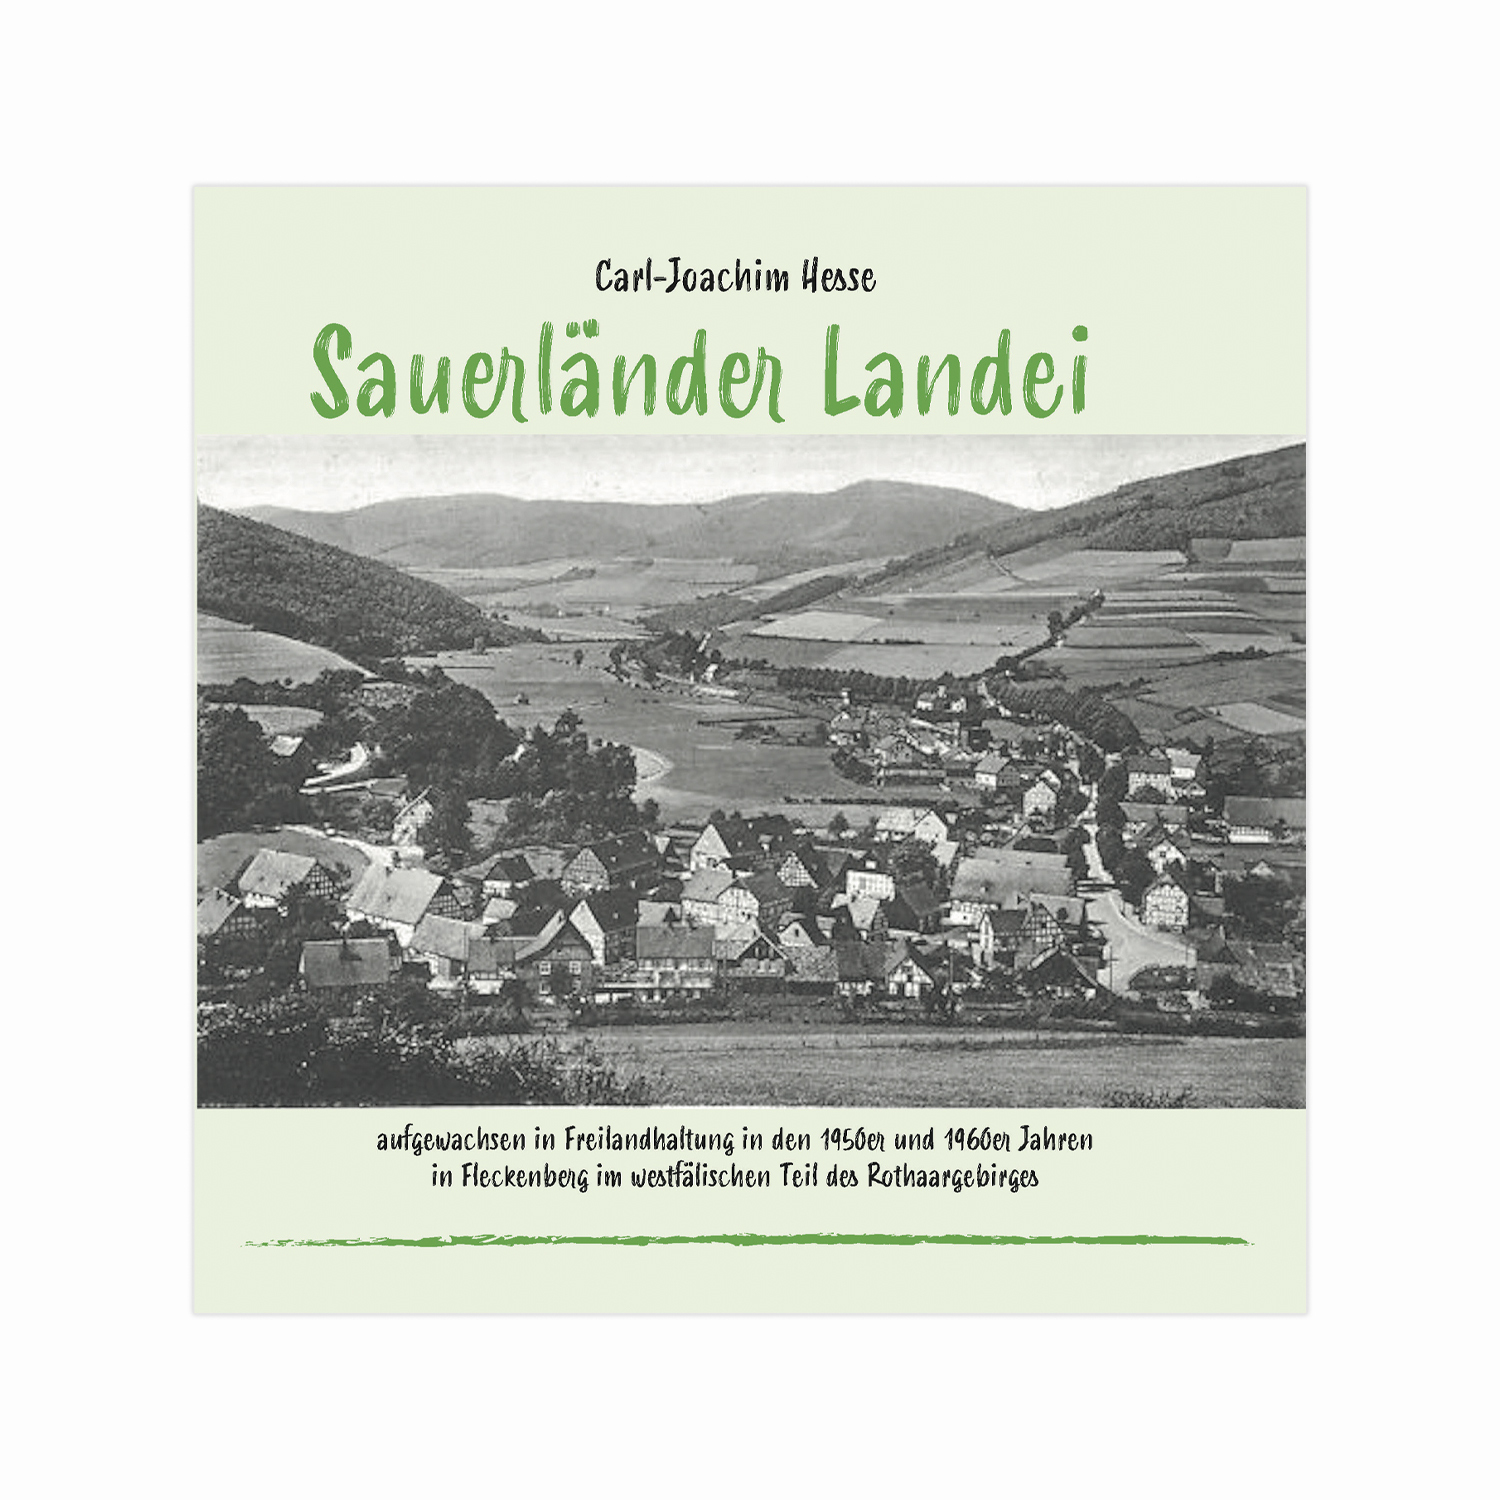 Sauerländer Landei (Carl-Joachim Hesse)